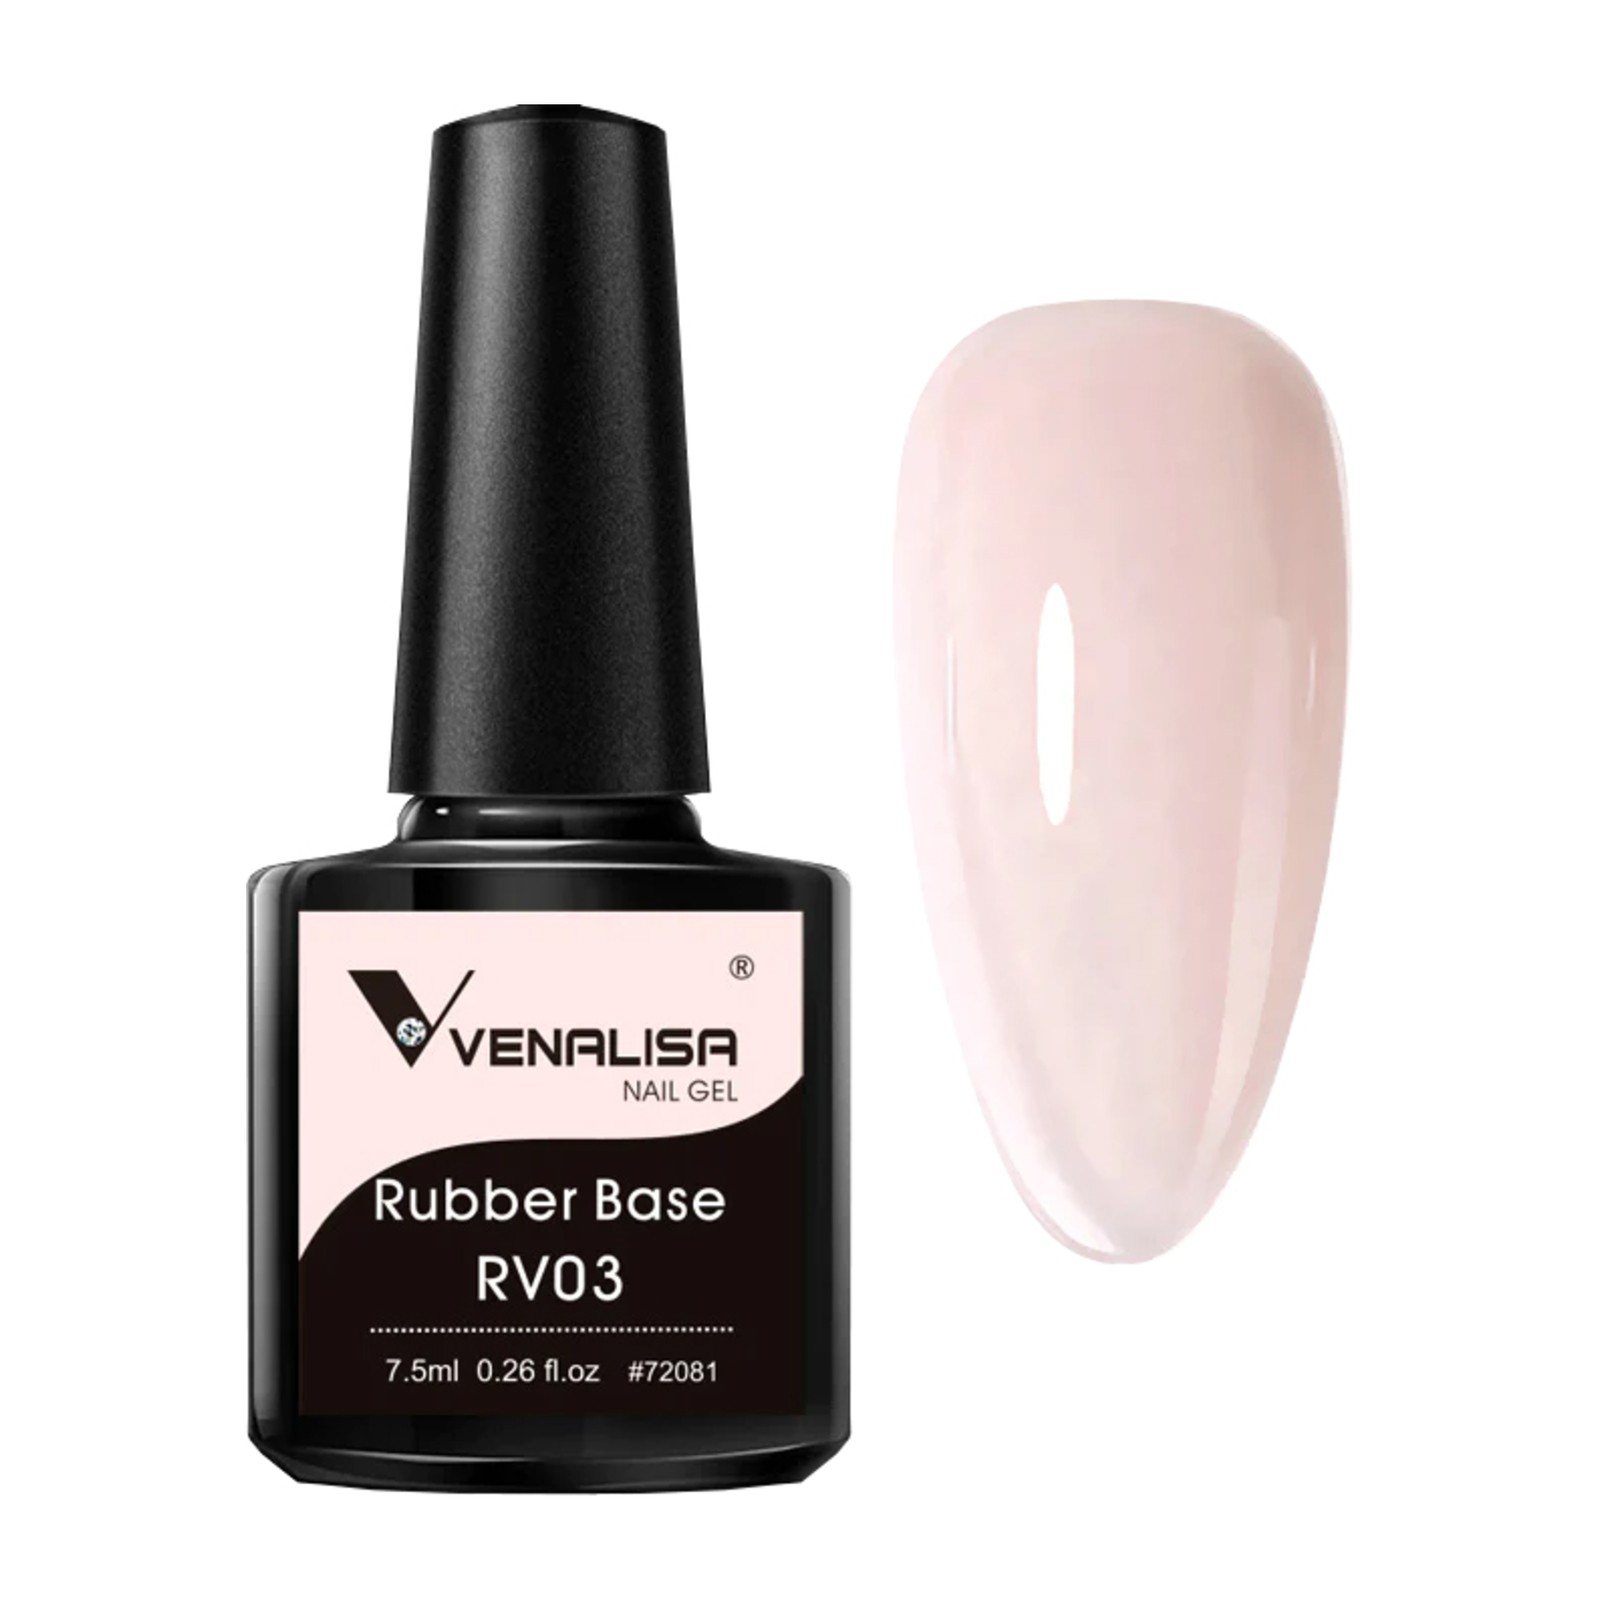 Venalisa - Rubber Base RV03 - 7.5ml